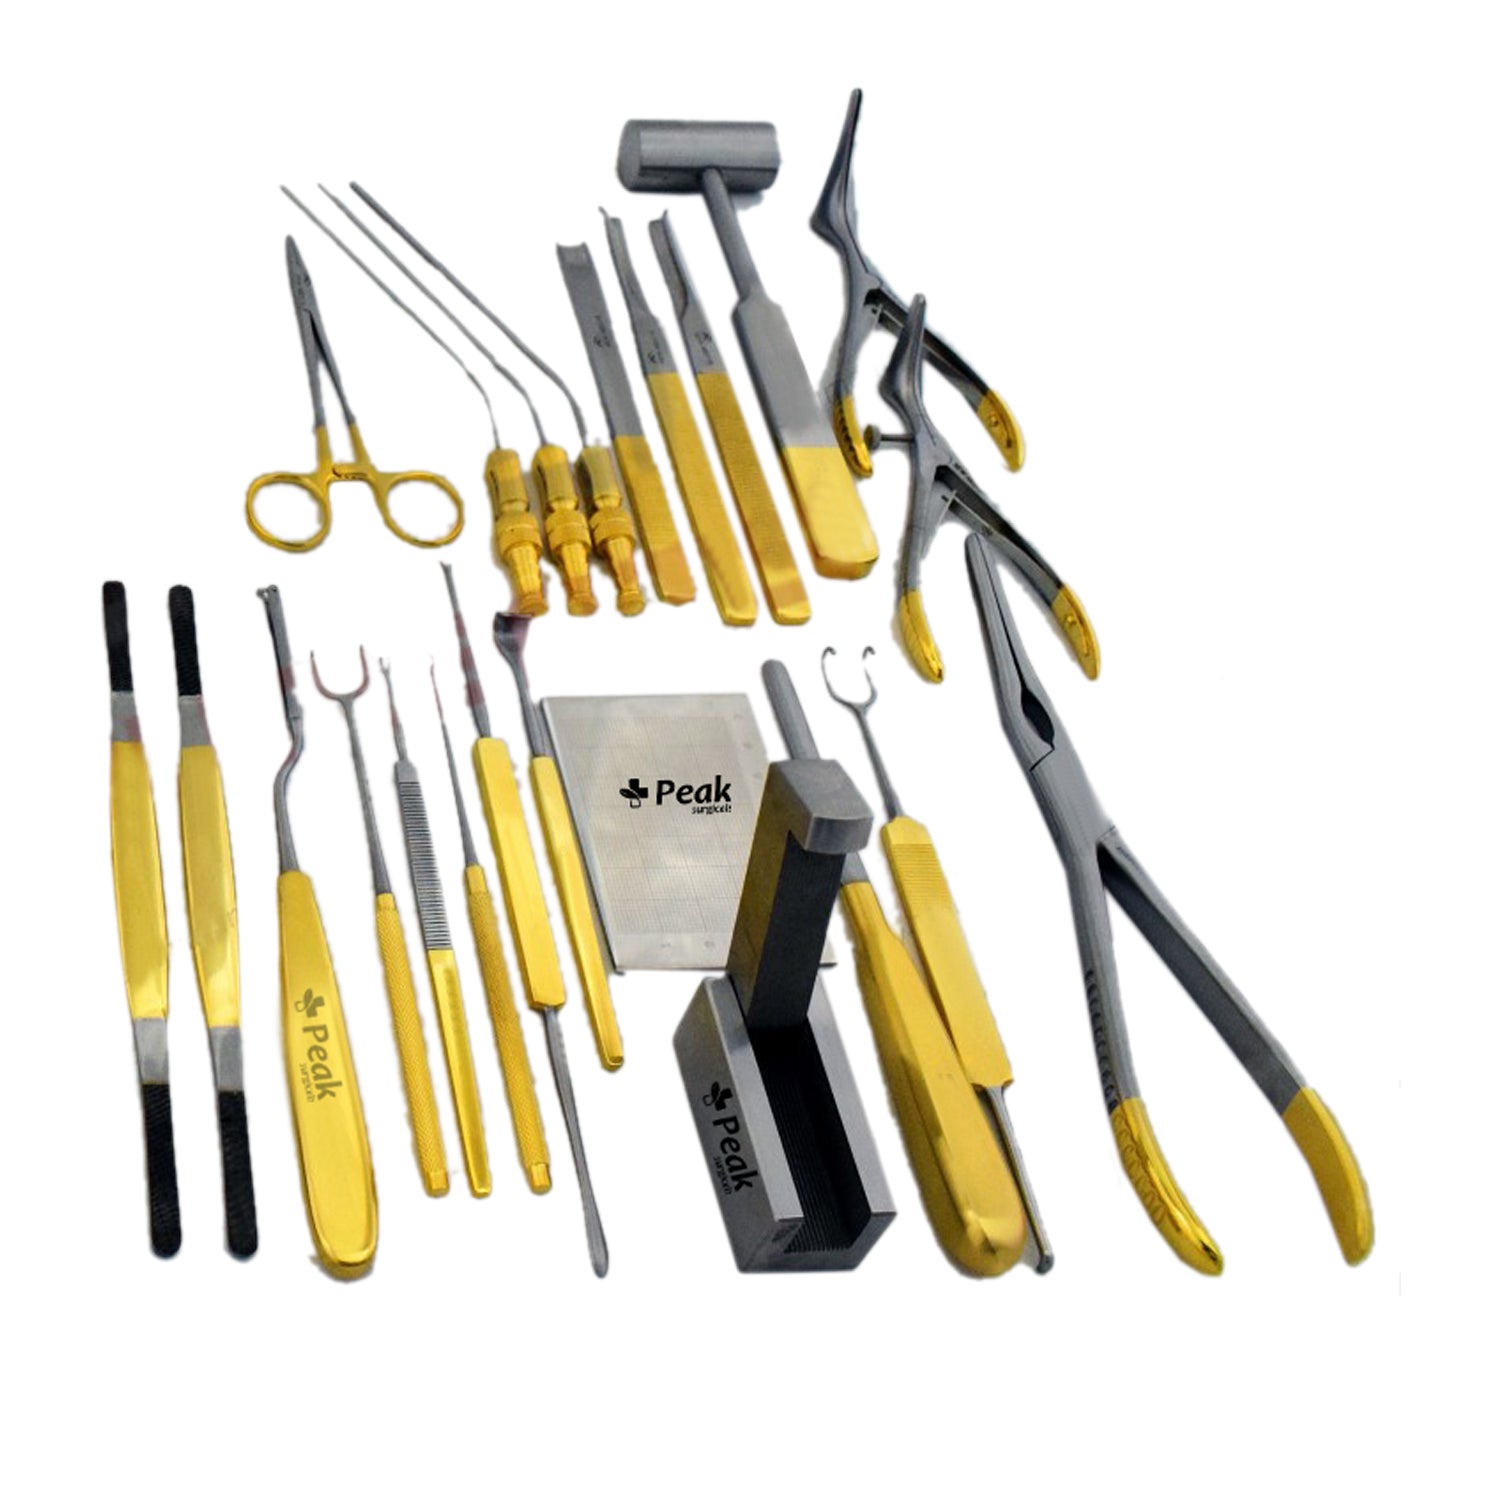 Rhinoplasty Instruments Set